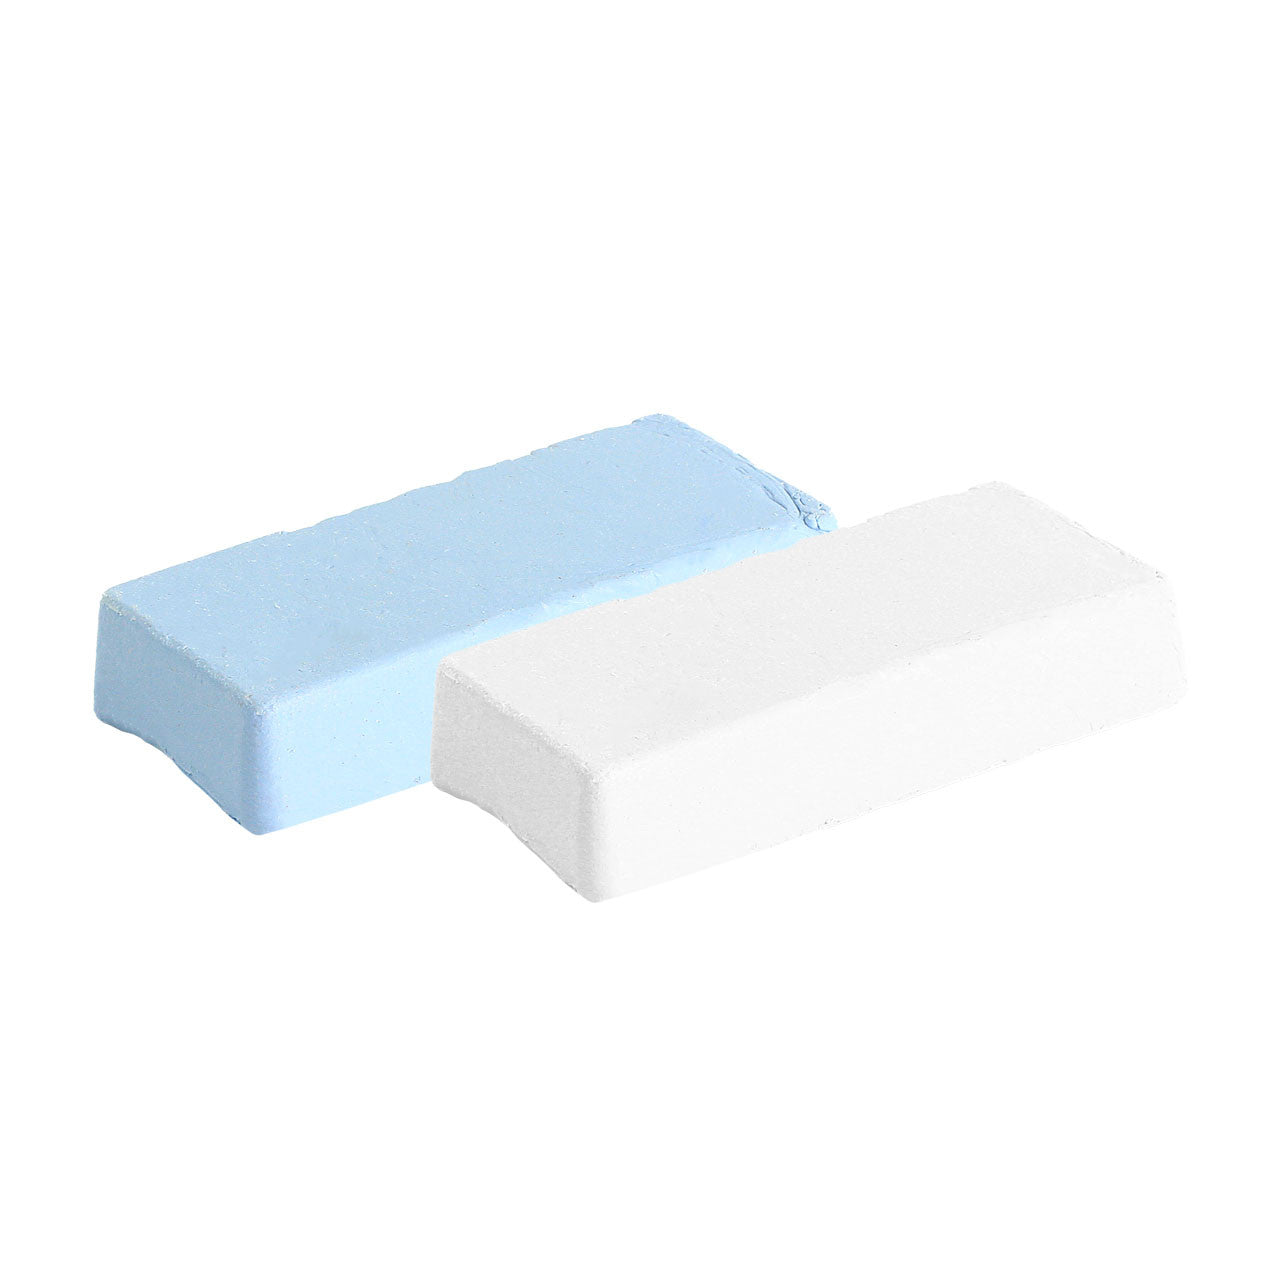 Eisenblätter 40009 Mini Polierpasten ca. 120 g (60 g weiß + 60 g blau)